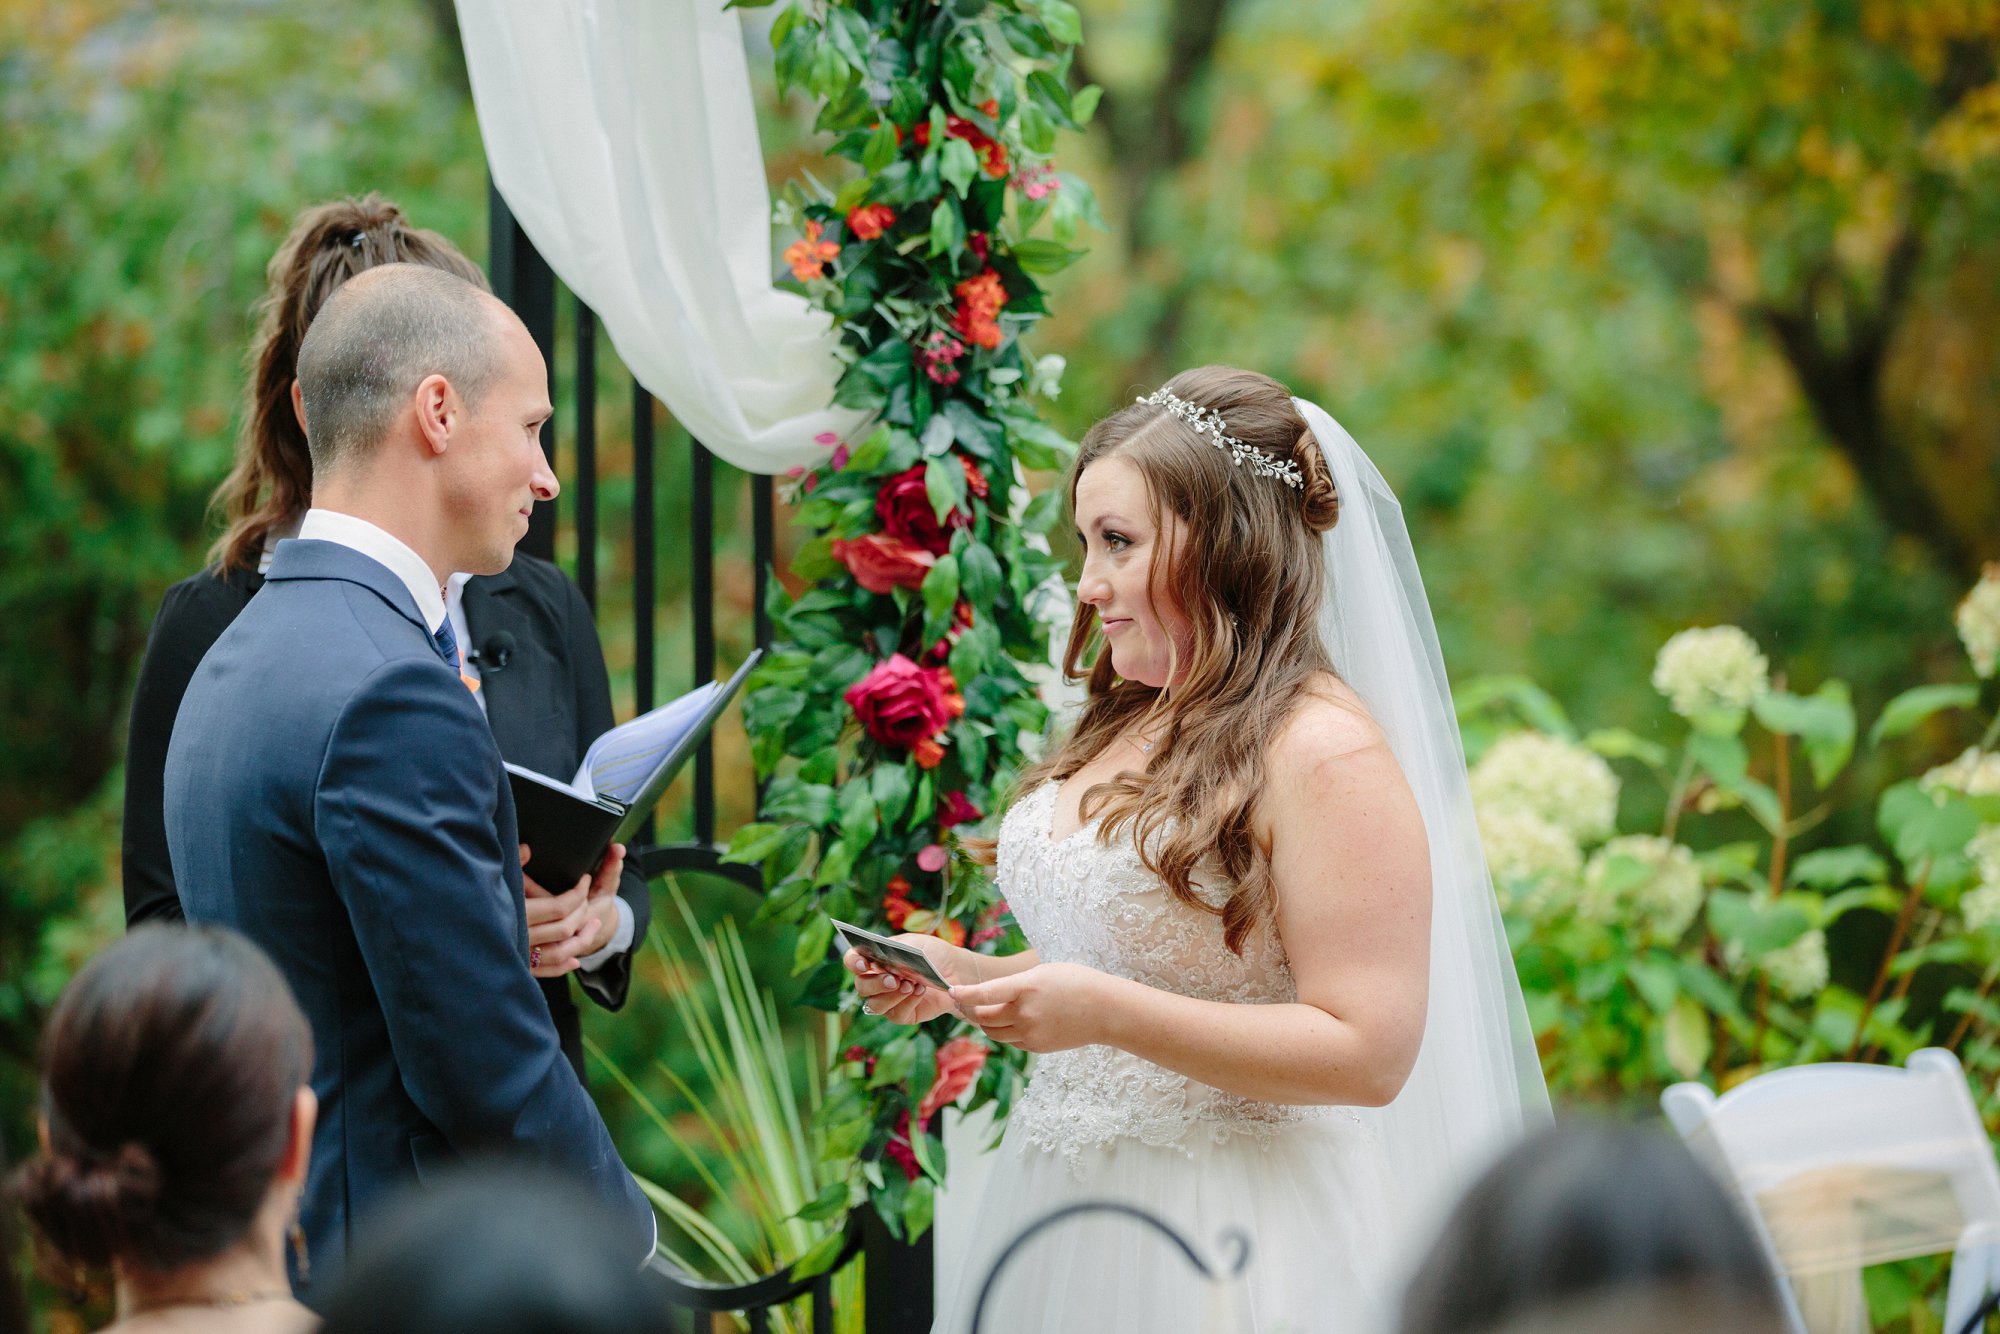 vow exchange between bride and groom from outdoor wedding ceremony